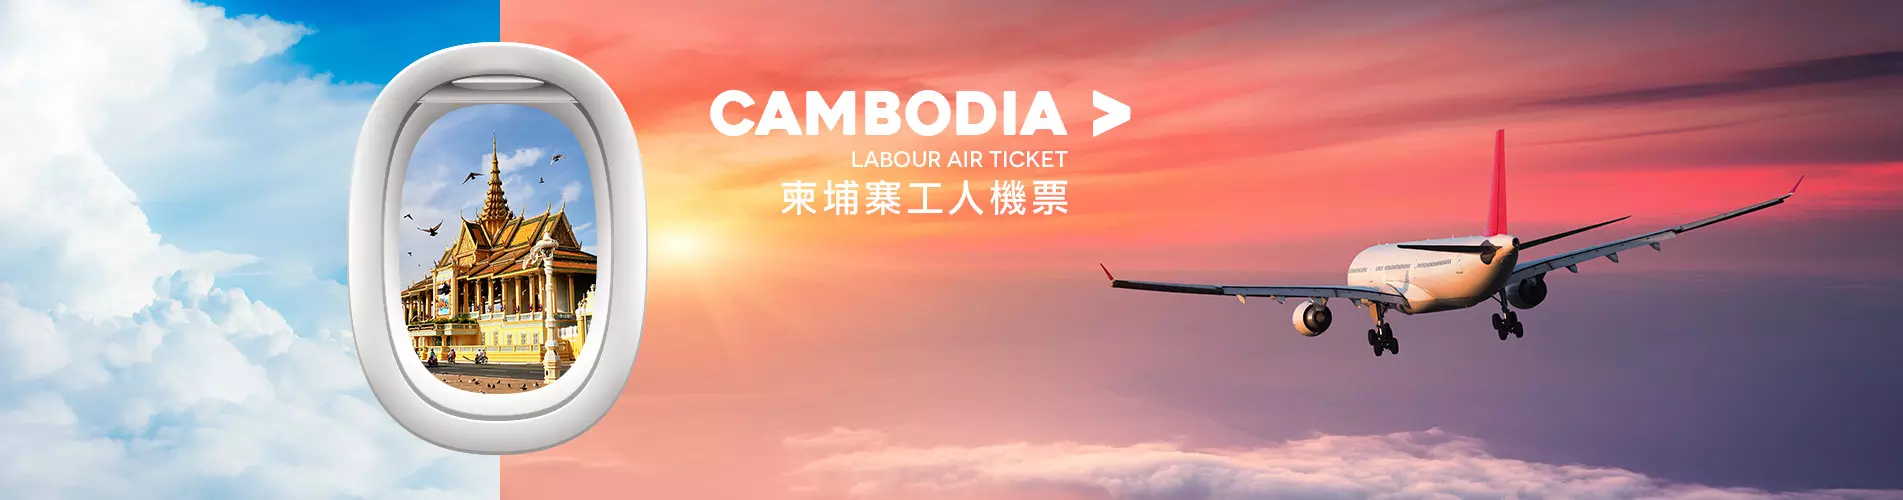 僱傭機票優惠 - 柬埔寨(金邊、暹粒) 工人機票